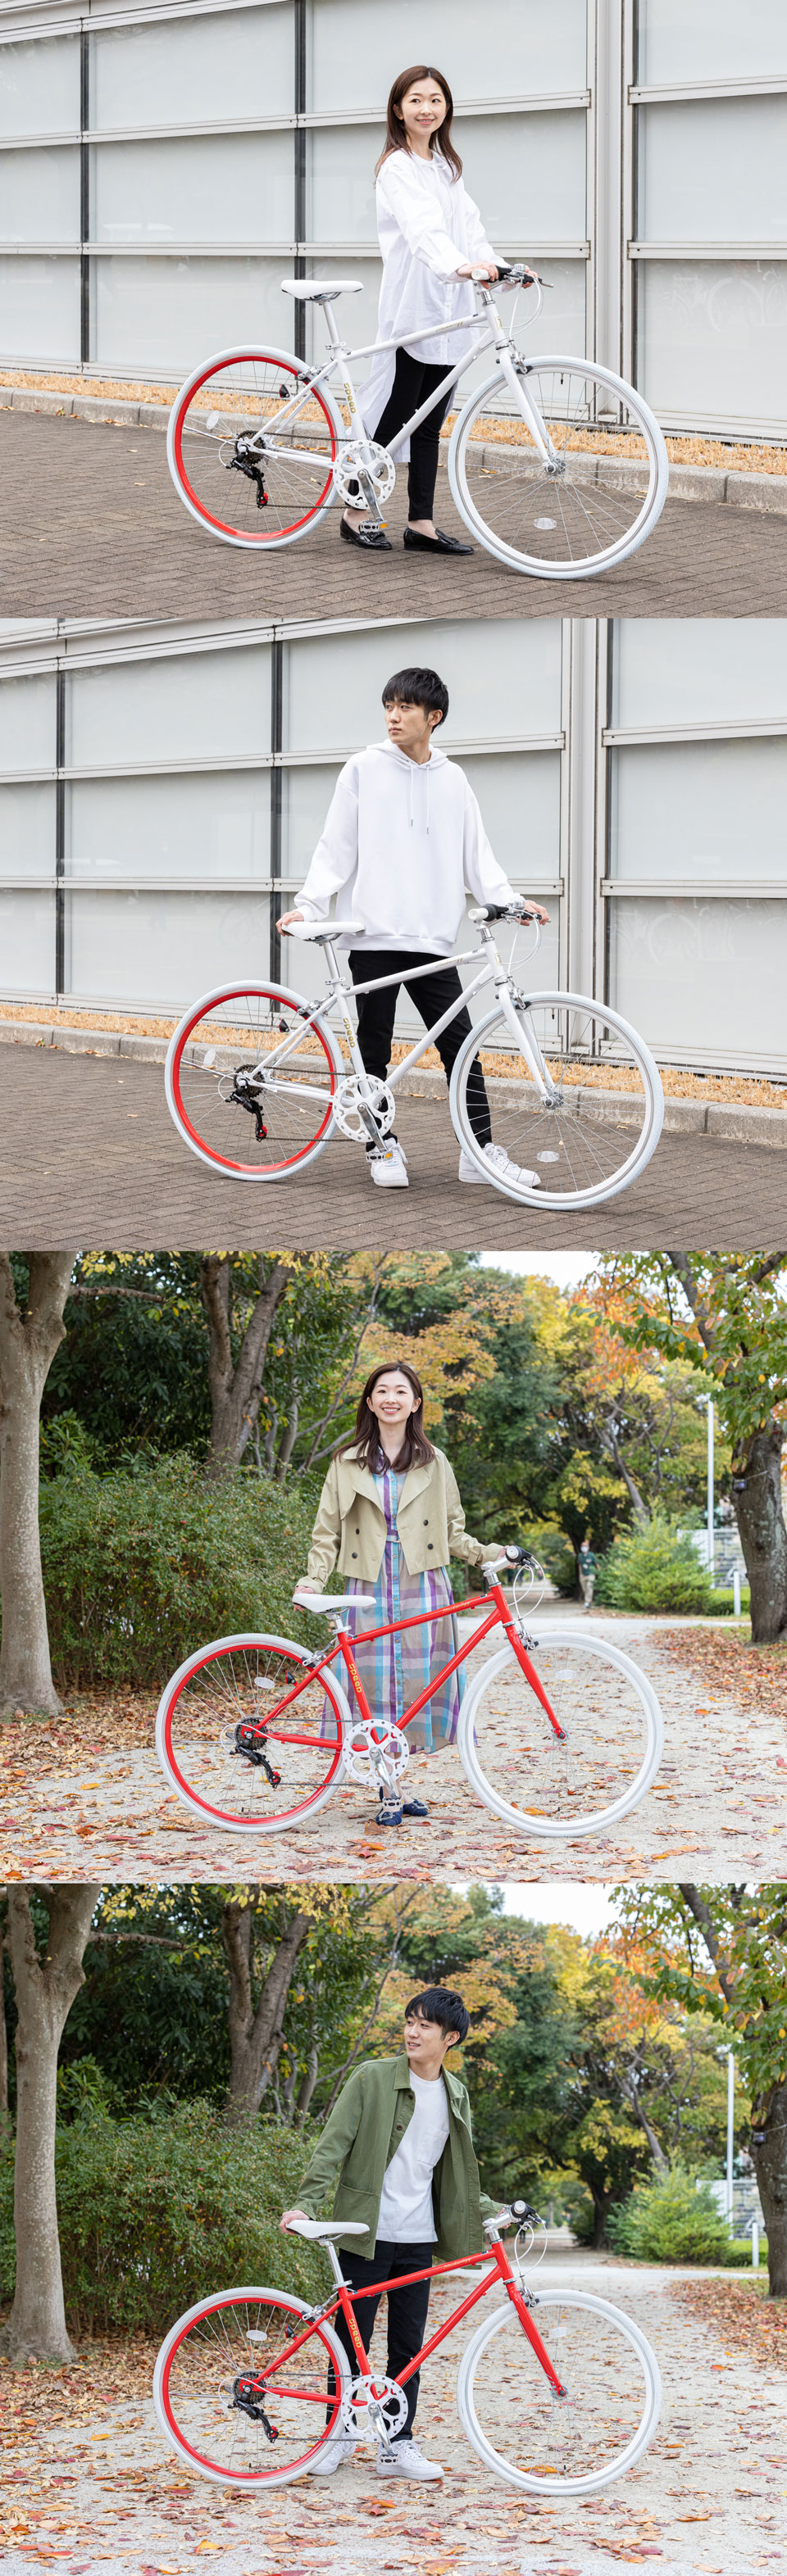 クロスバイク 700C シマノ製6段変速 自転車 初心者 女性 プレゼント